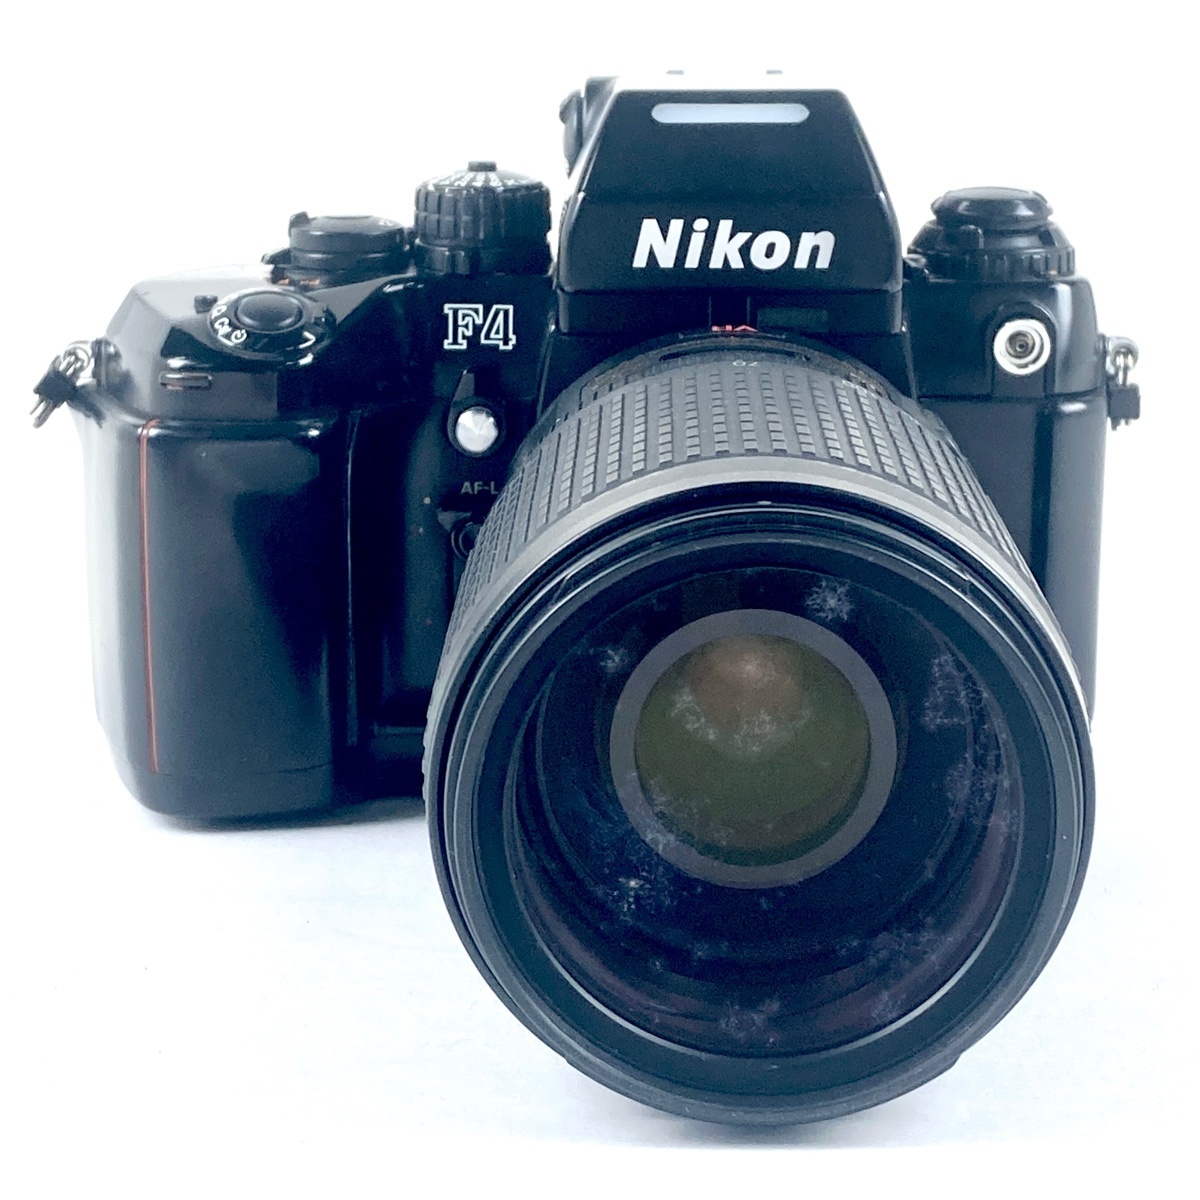 ニコン Nikon F4 + AF-S NIKKOR 70-300mm F4.5-5.6G ED VR フィルム オートフォーカス 一眼レフカメラ 【中古】の画像1